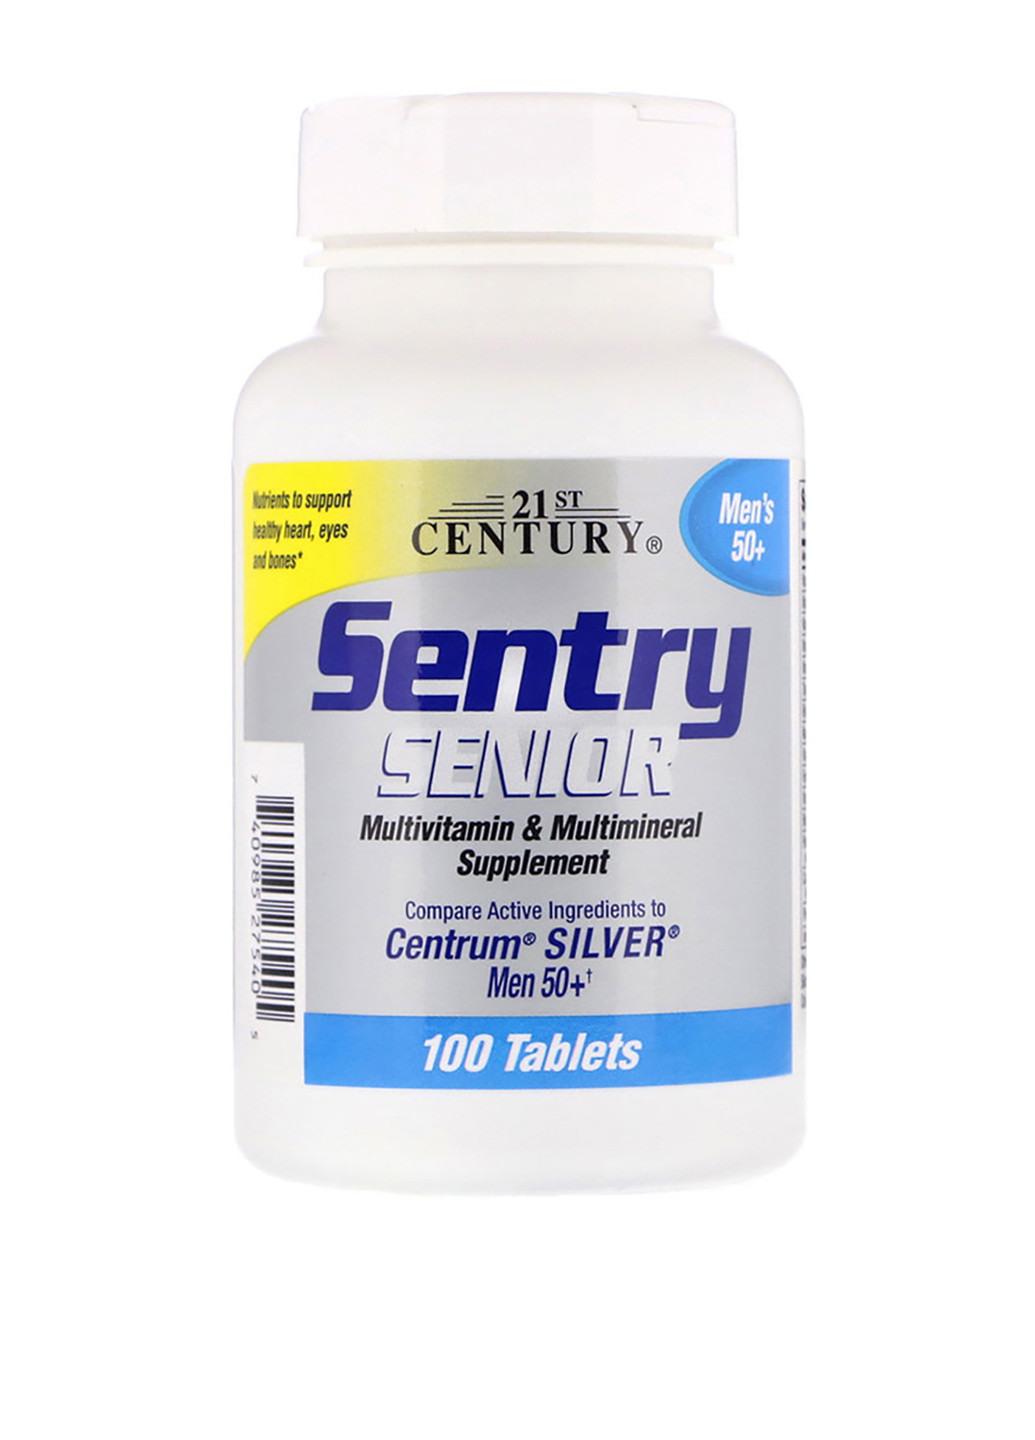 Мультивітаміни та мультимінерали для чоловіків 50+, Sentry (100 таб.) 21st Century (251206325)